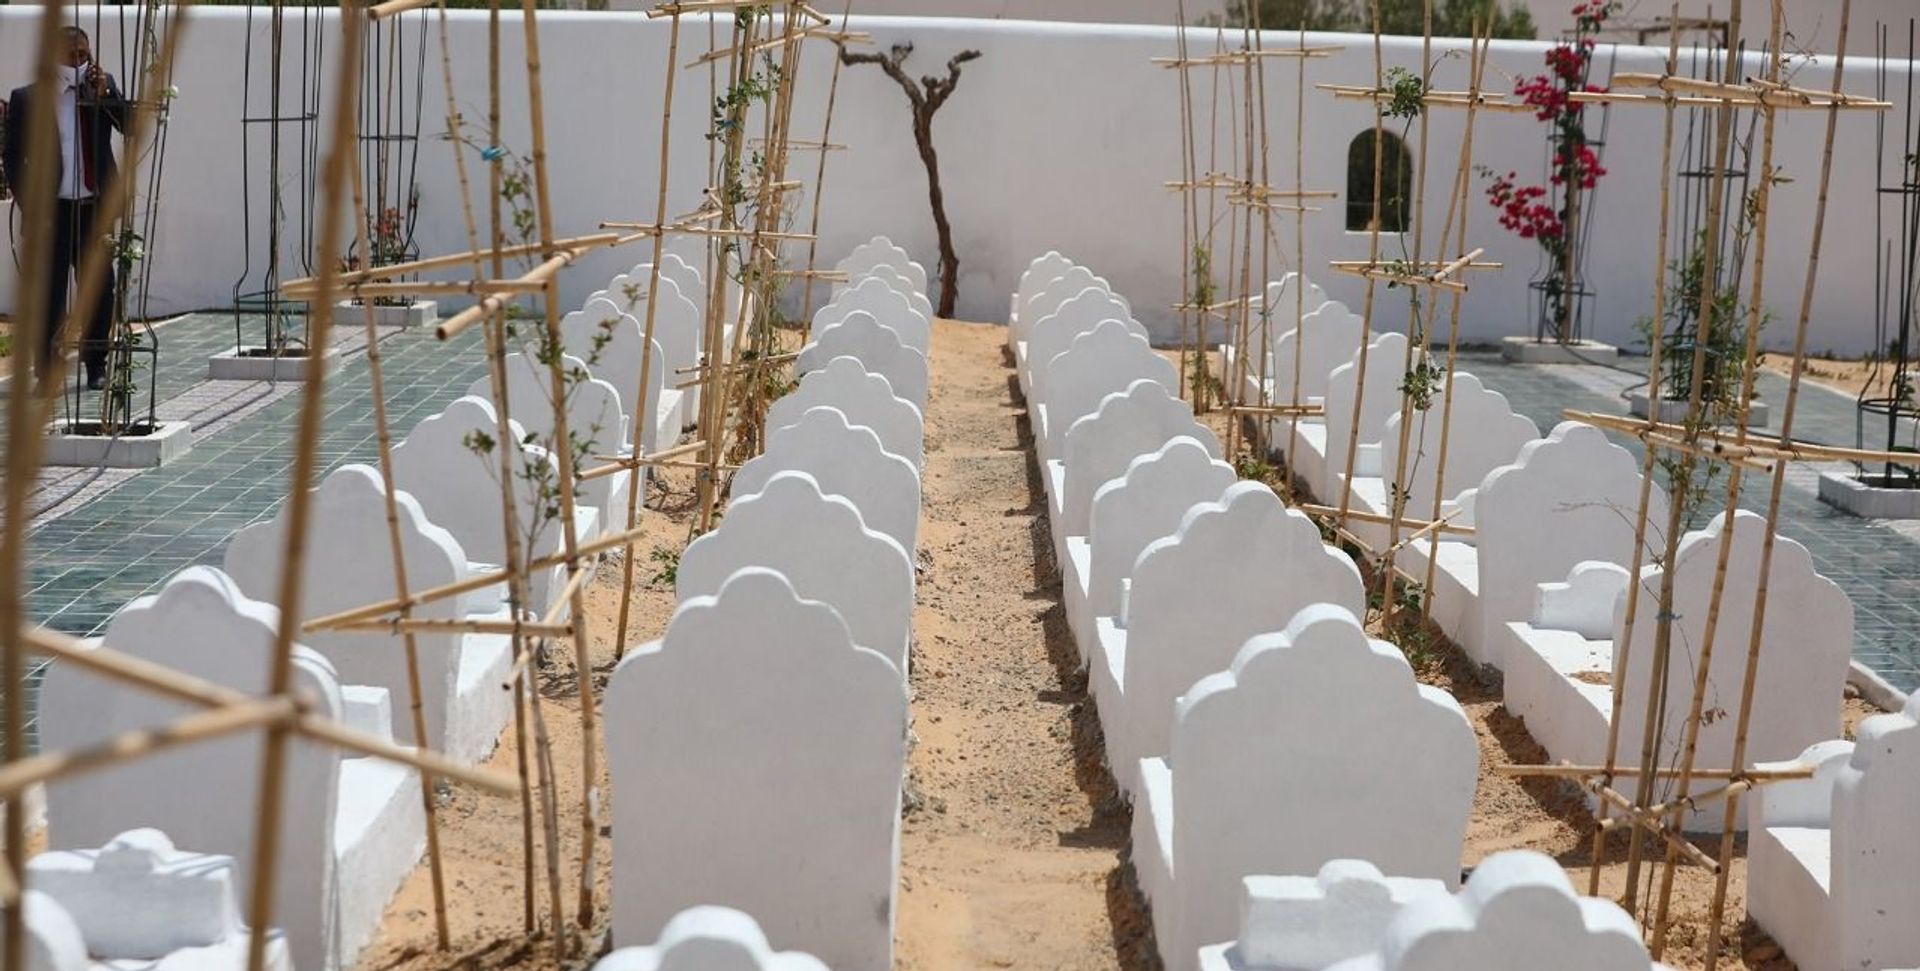 Le Jardin d’Afrique à Zarzis, en Tunisie, dénonce l’attitude des instances internationales restées indifférentes au sort tragique des migrants. Courtesy of Rachid Koraïchi